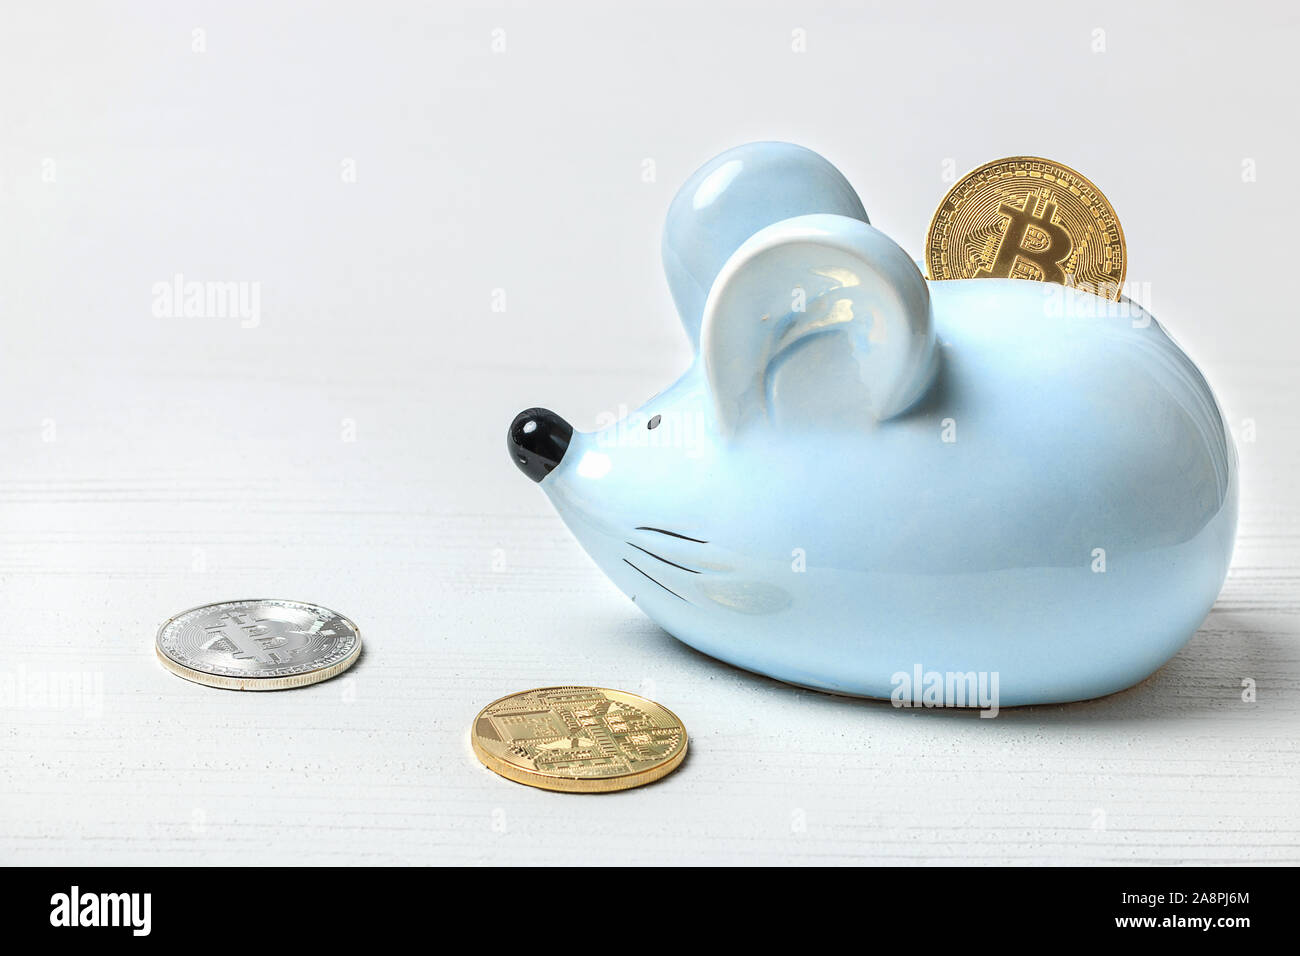 Blaue Maus oder Ratte Sparschwein auf weißem Hintergrund mit bitcoin Münzen. Konzept für Themen über Währungen und Finanzen, Horoskop und das neue Jahr 2020. Stockfoto